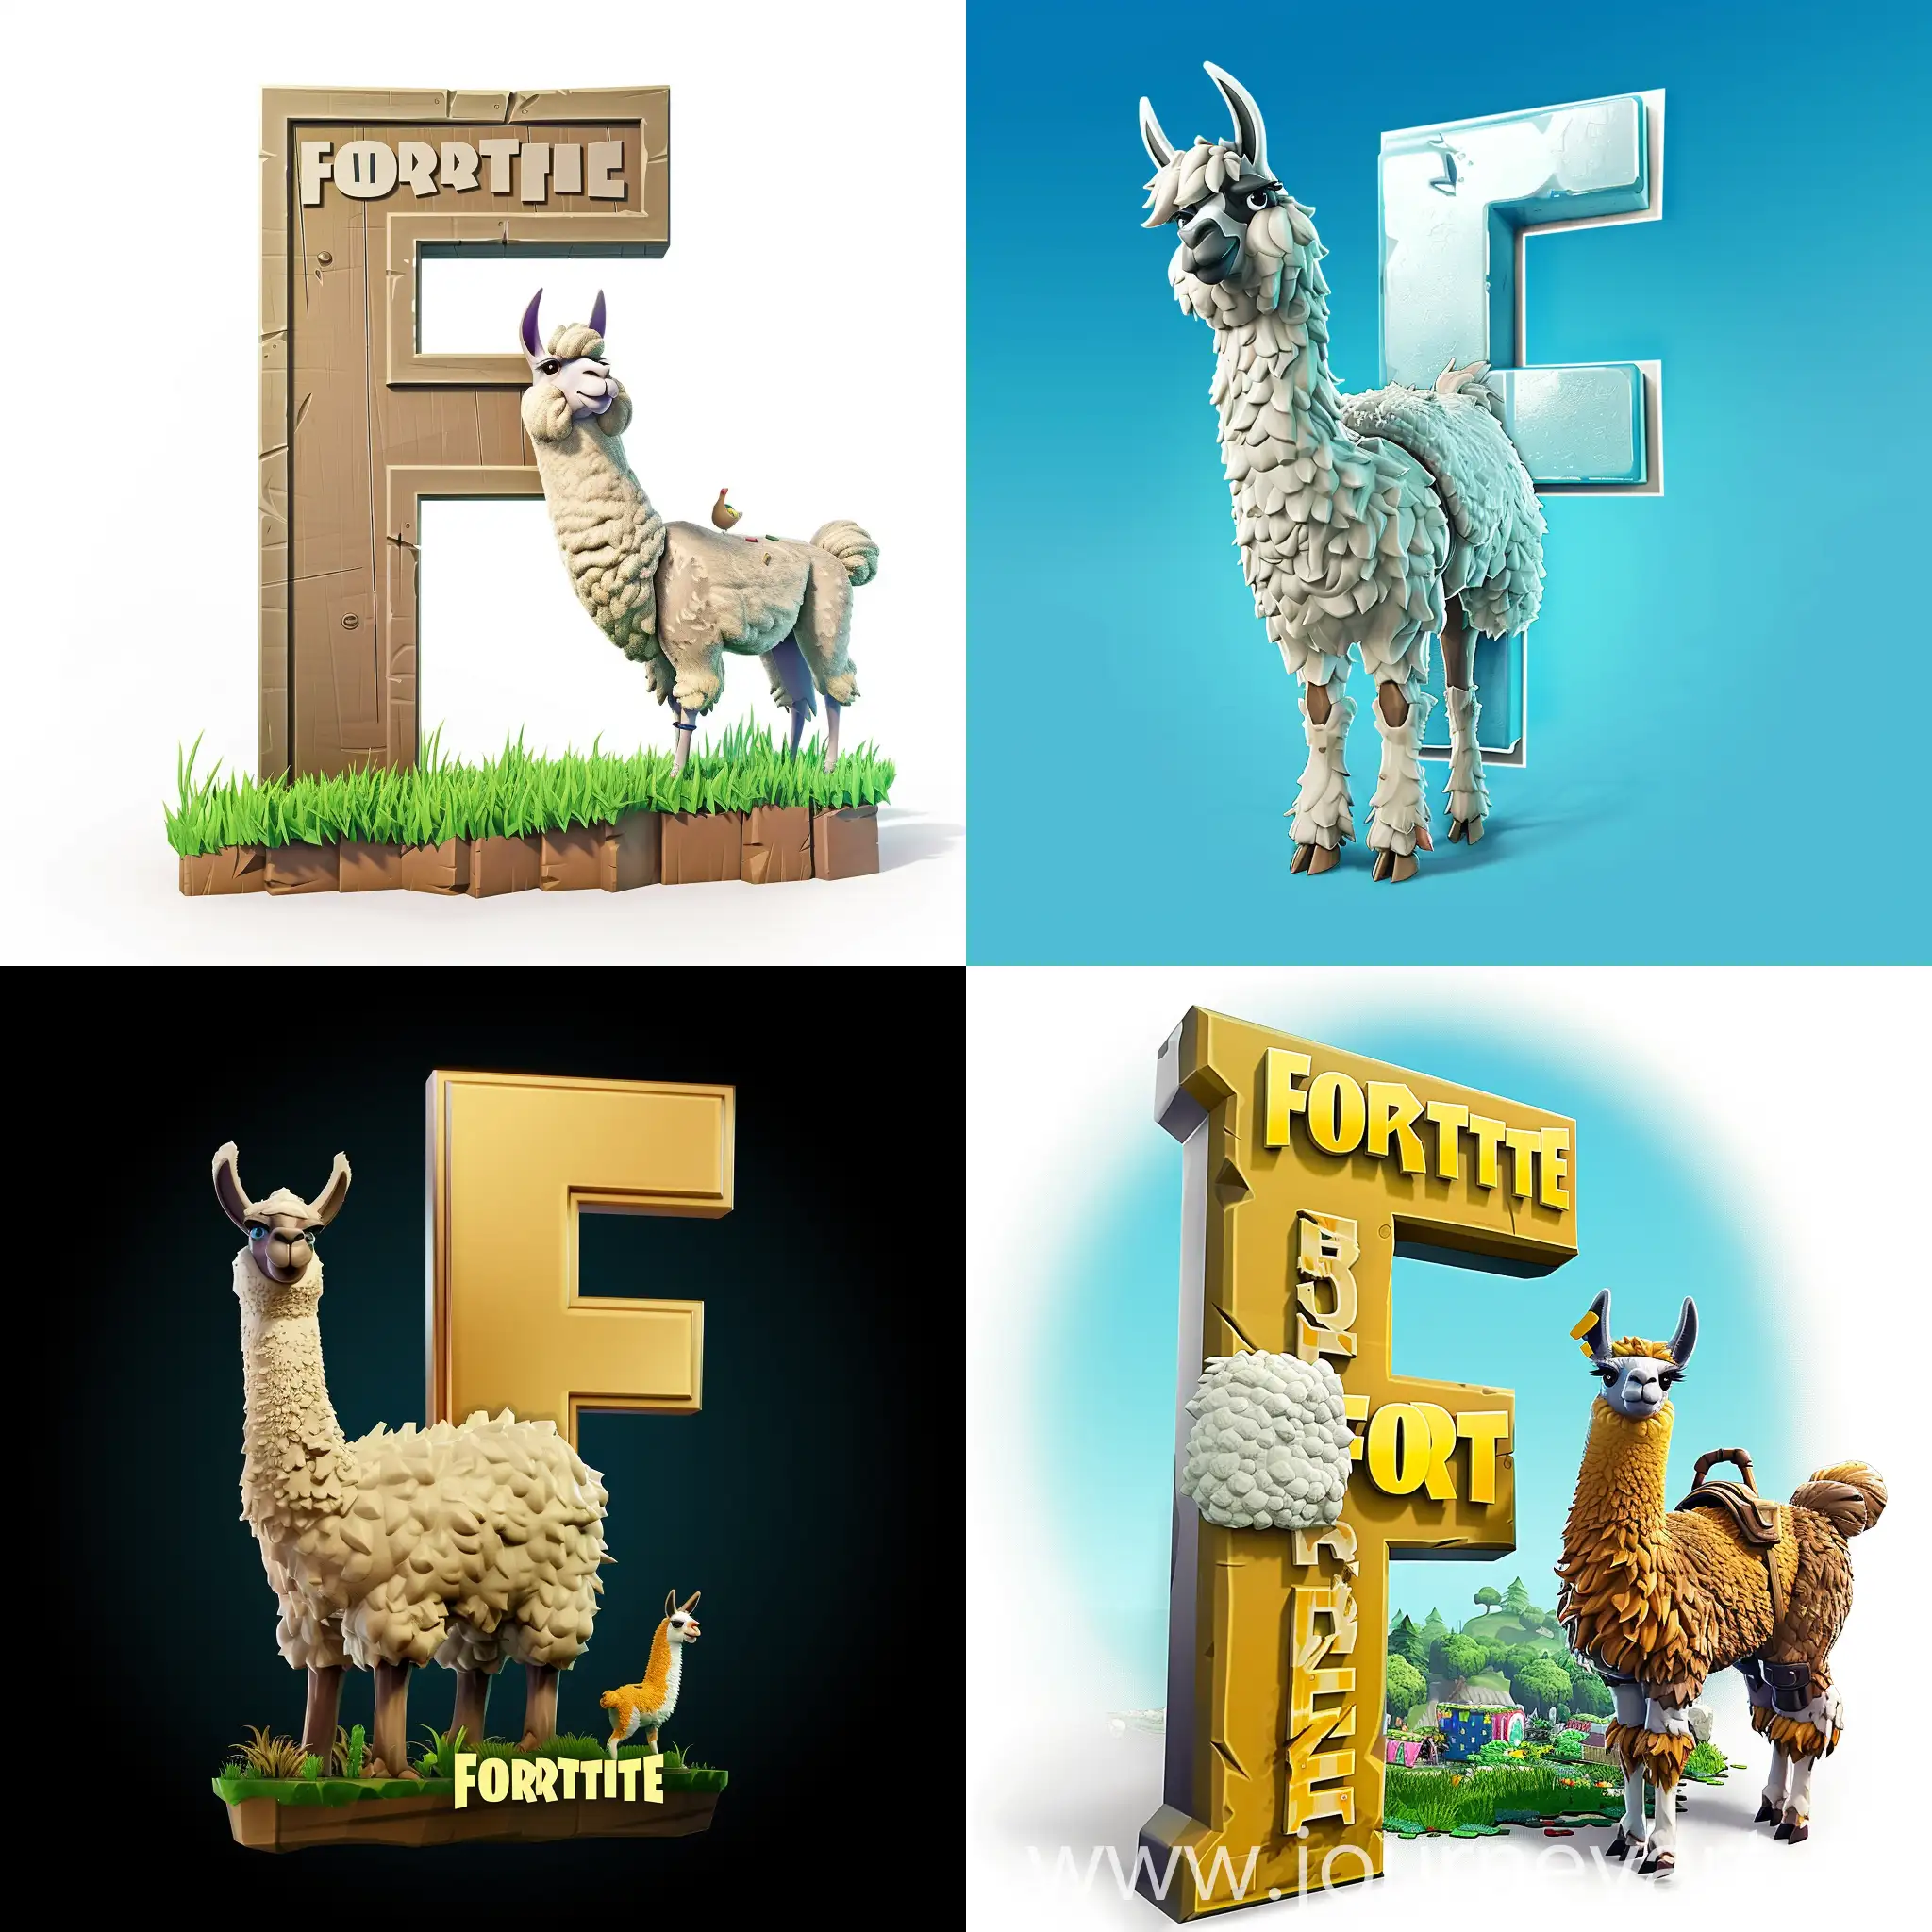 Fortnite-Logo-with-Llama-Gaming-Mascot-and-Emblematic-Animal